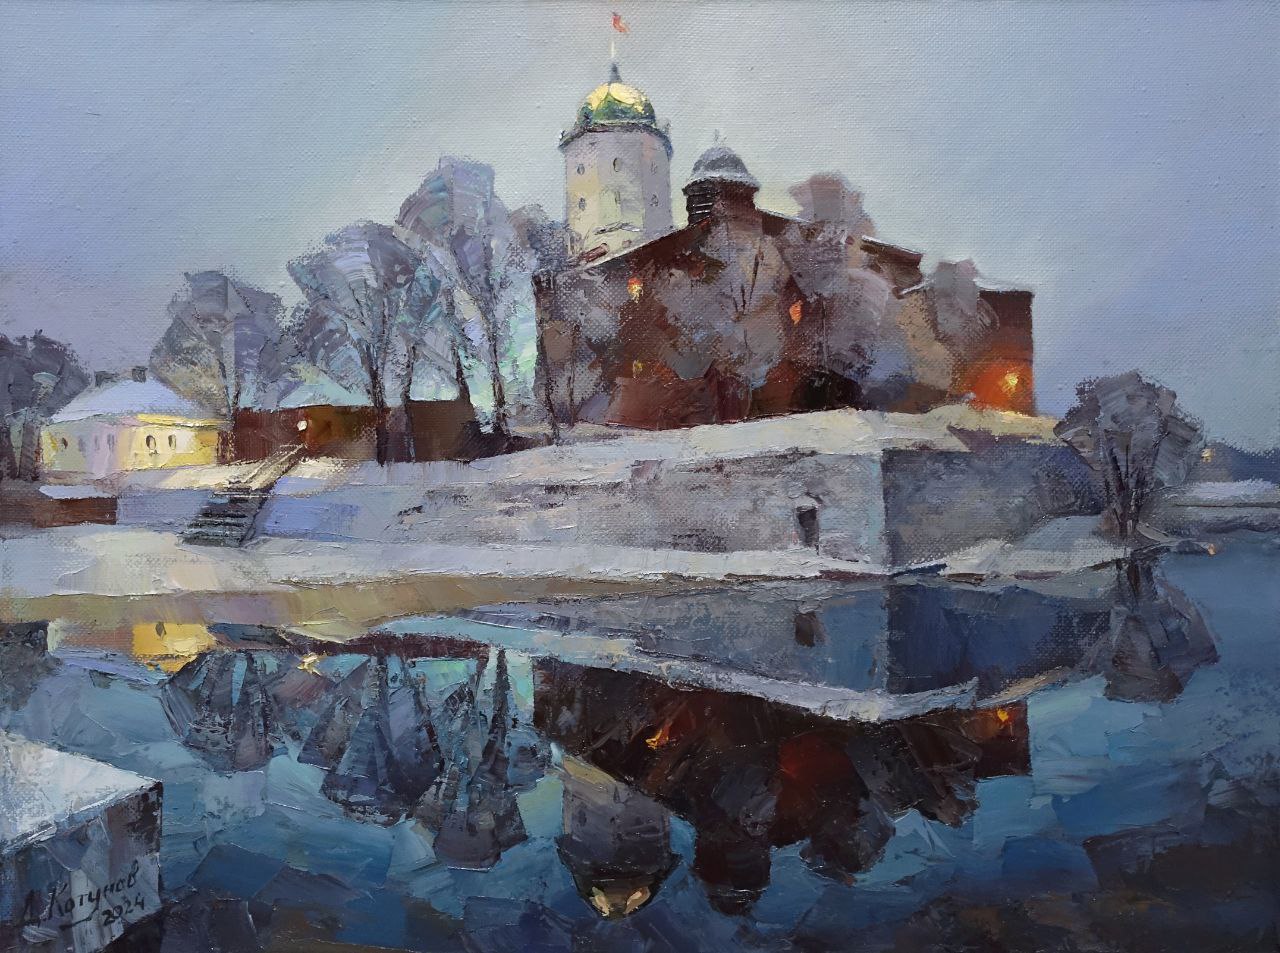 Vyborg Castle - 1, Dmitry Kotunov, Buy the painting Oil